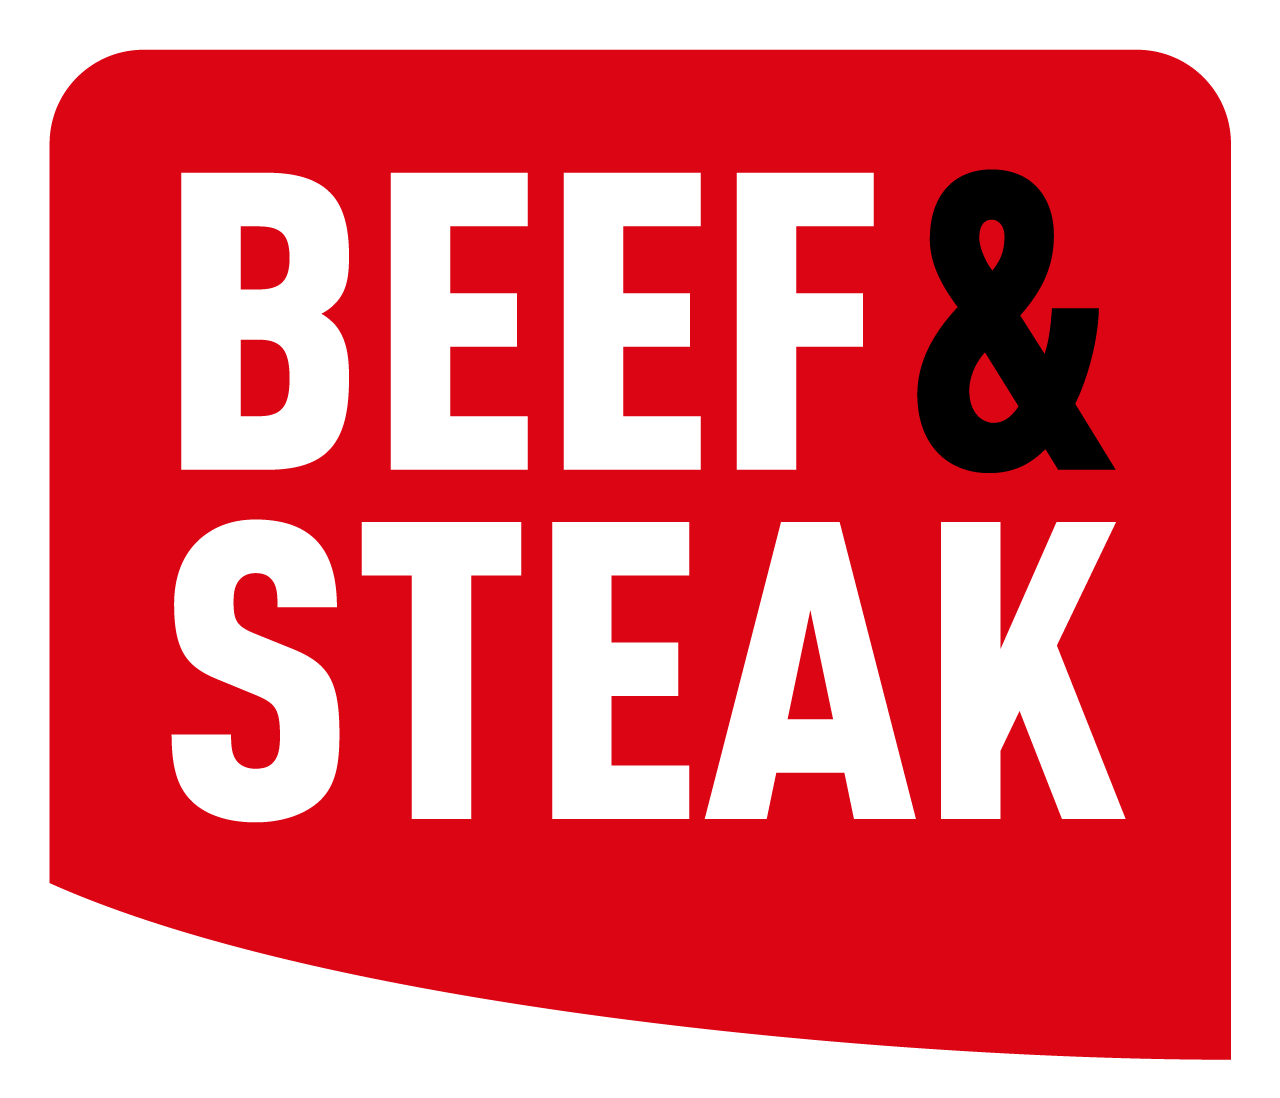 Beef & Steak